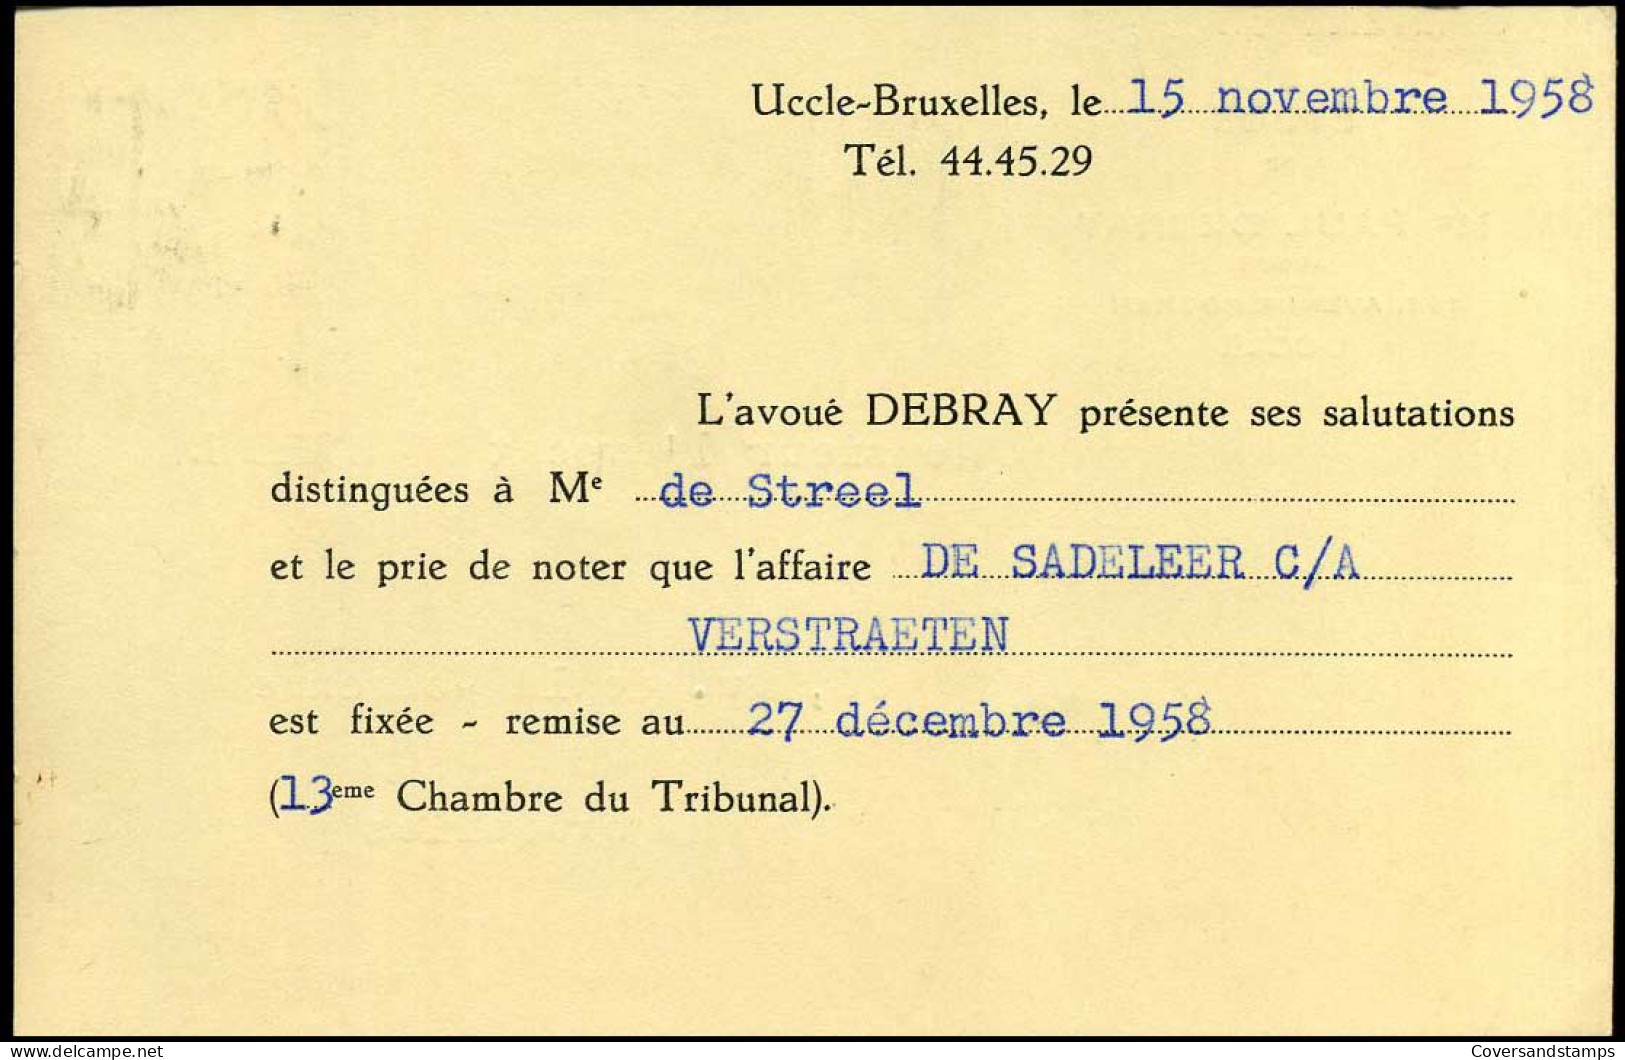 Postkaart : Van Bruxelles Naar Bruxelles -- Etude De Paul Debray, Avoué, Uccle - Postkarten 1951-..